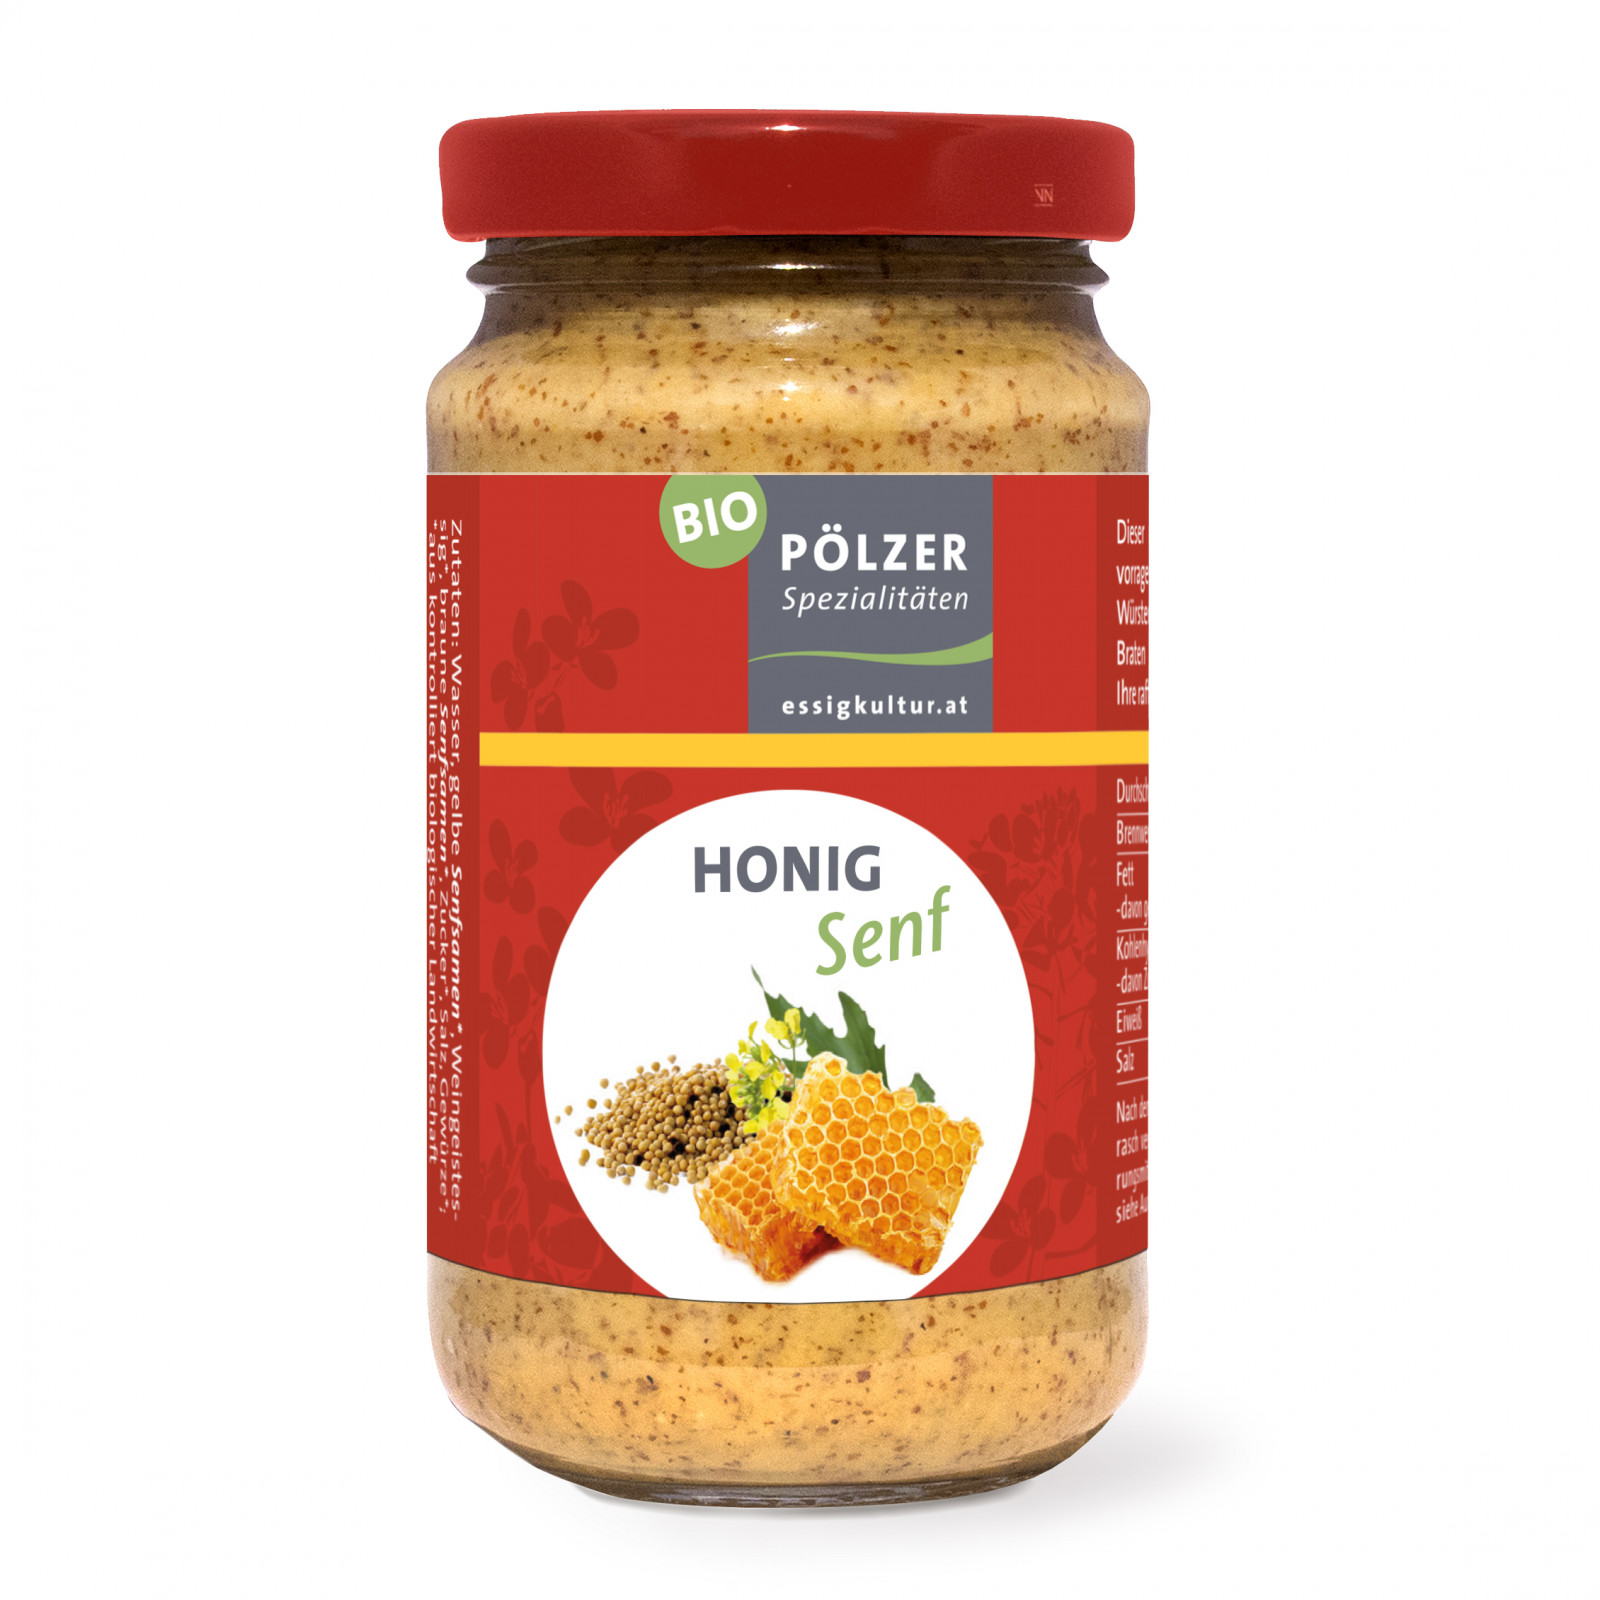 Bio-Honig-Senf - Pölzer Spezialitäten - Bauernladen